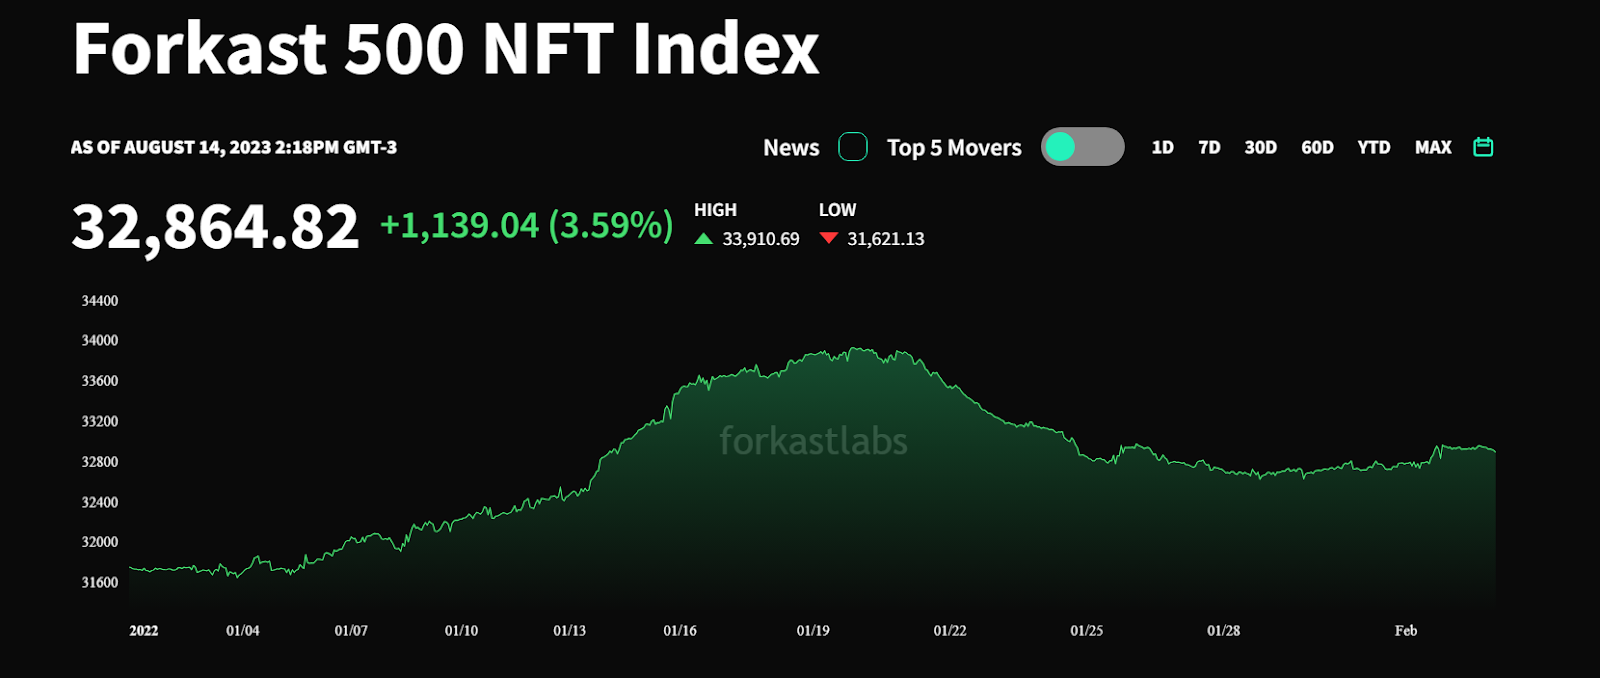 Como o mercado de NFT atinge seus picos e mínimos de maneira diferente do resto da indústria